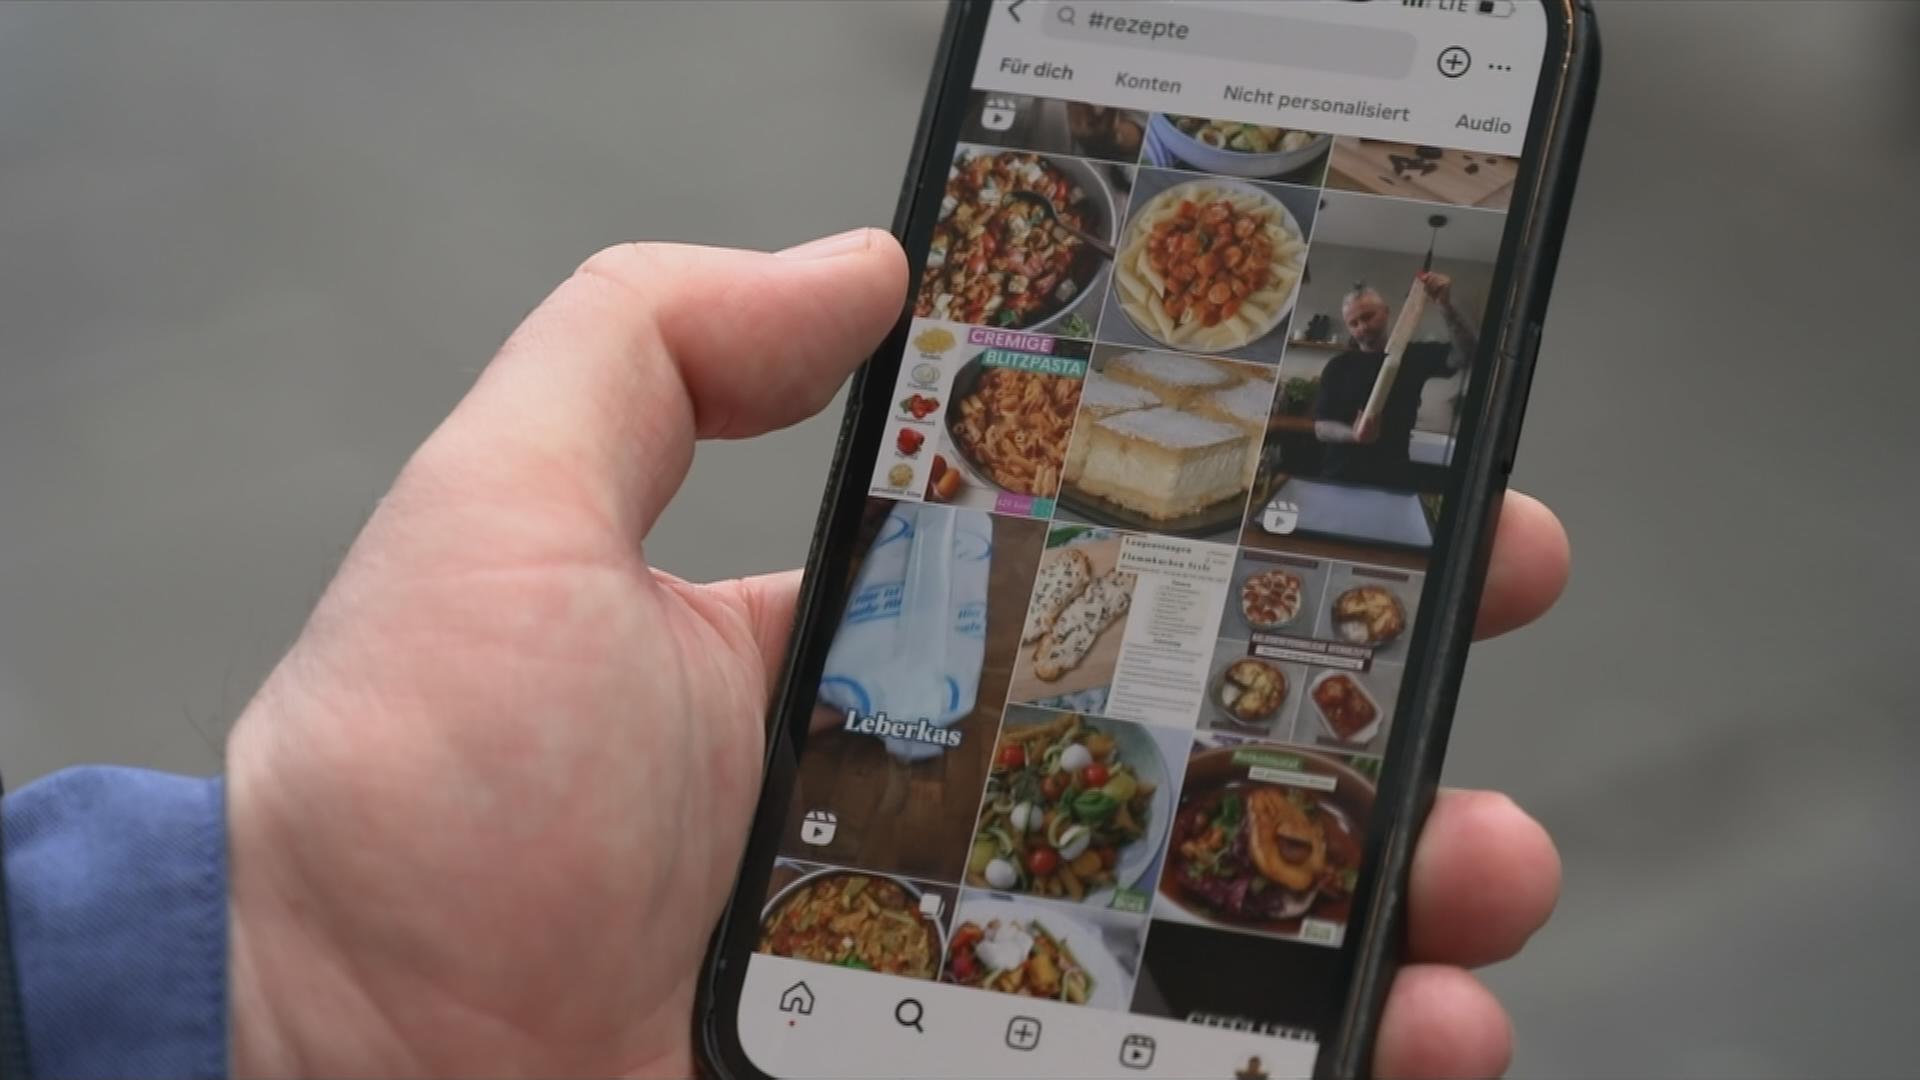 Smartphone mit Instagram-Feed, der verschiedene Posts zum Thema Essen und Ernährung zeigt.